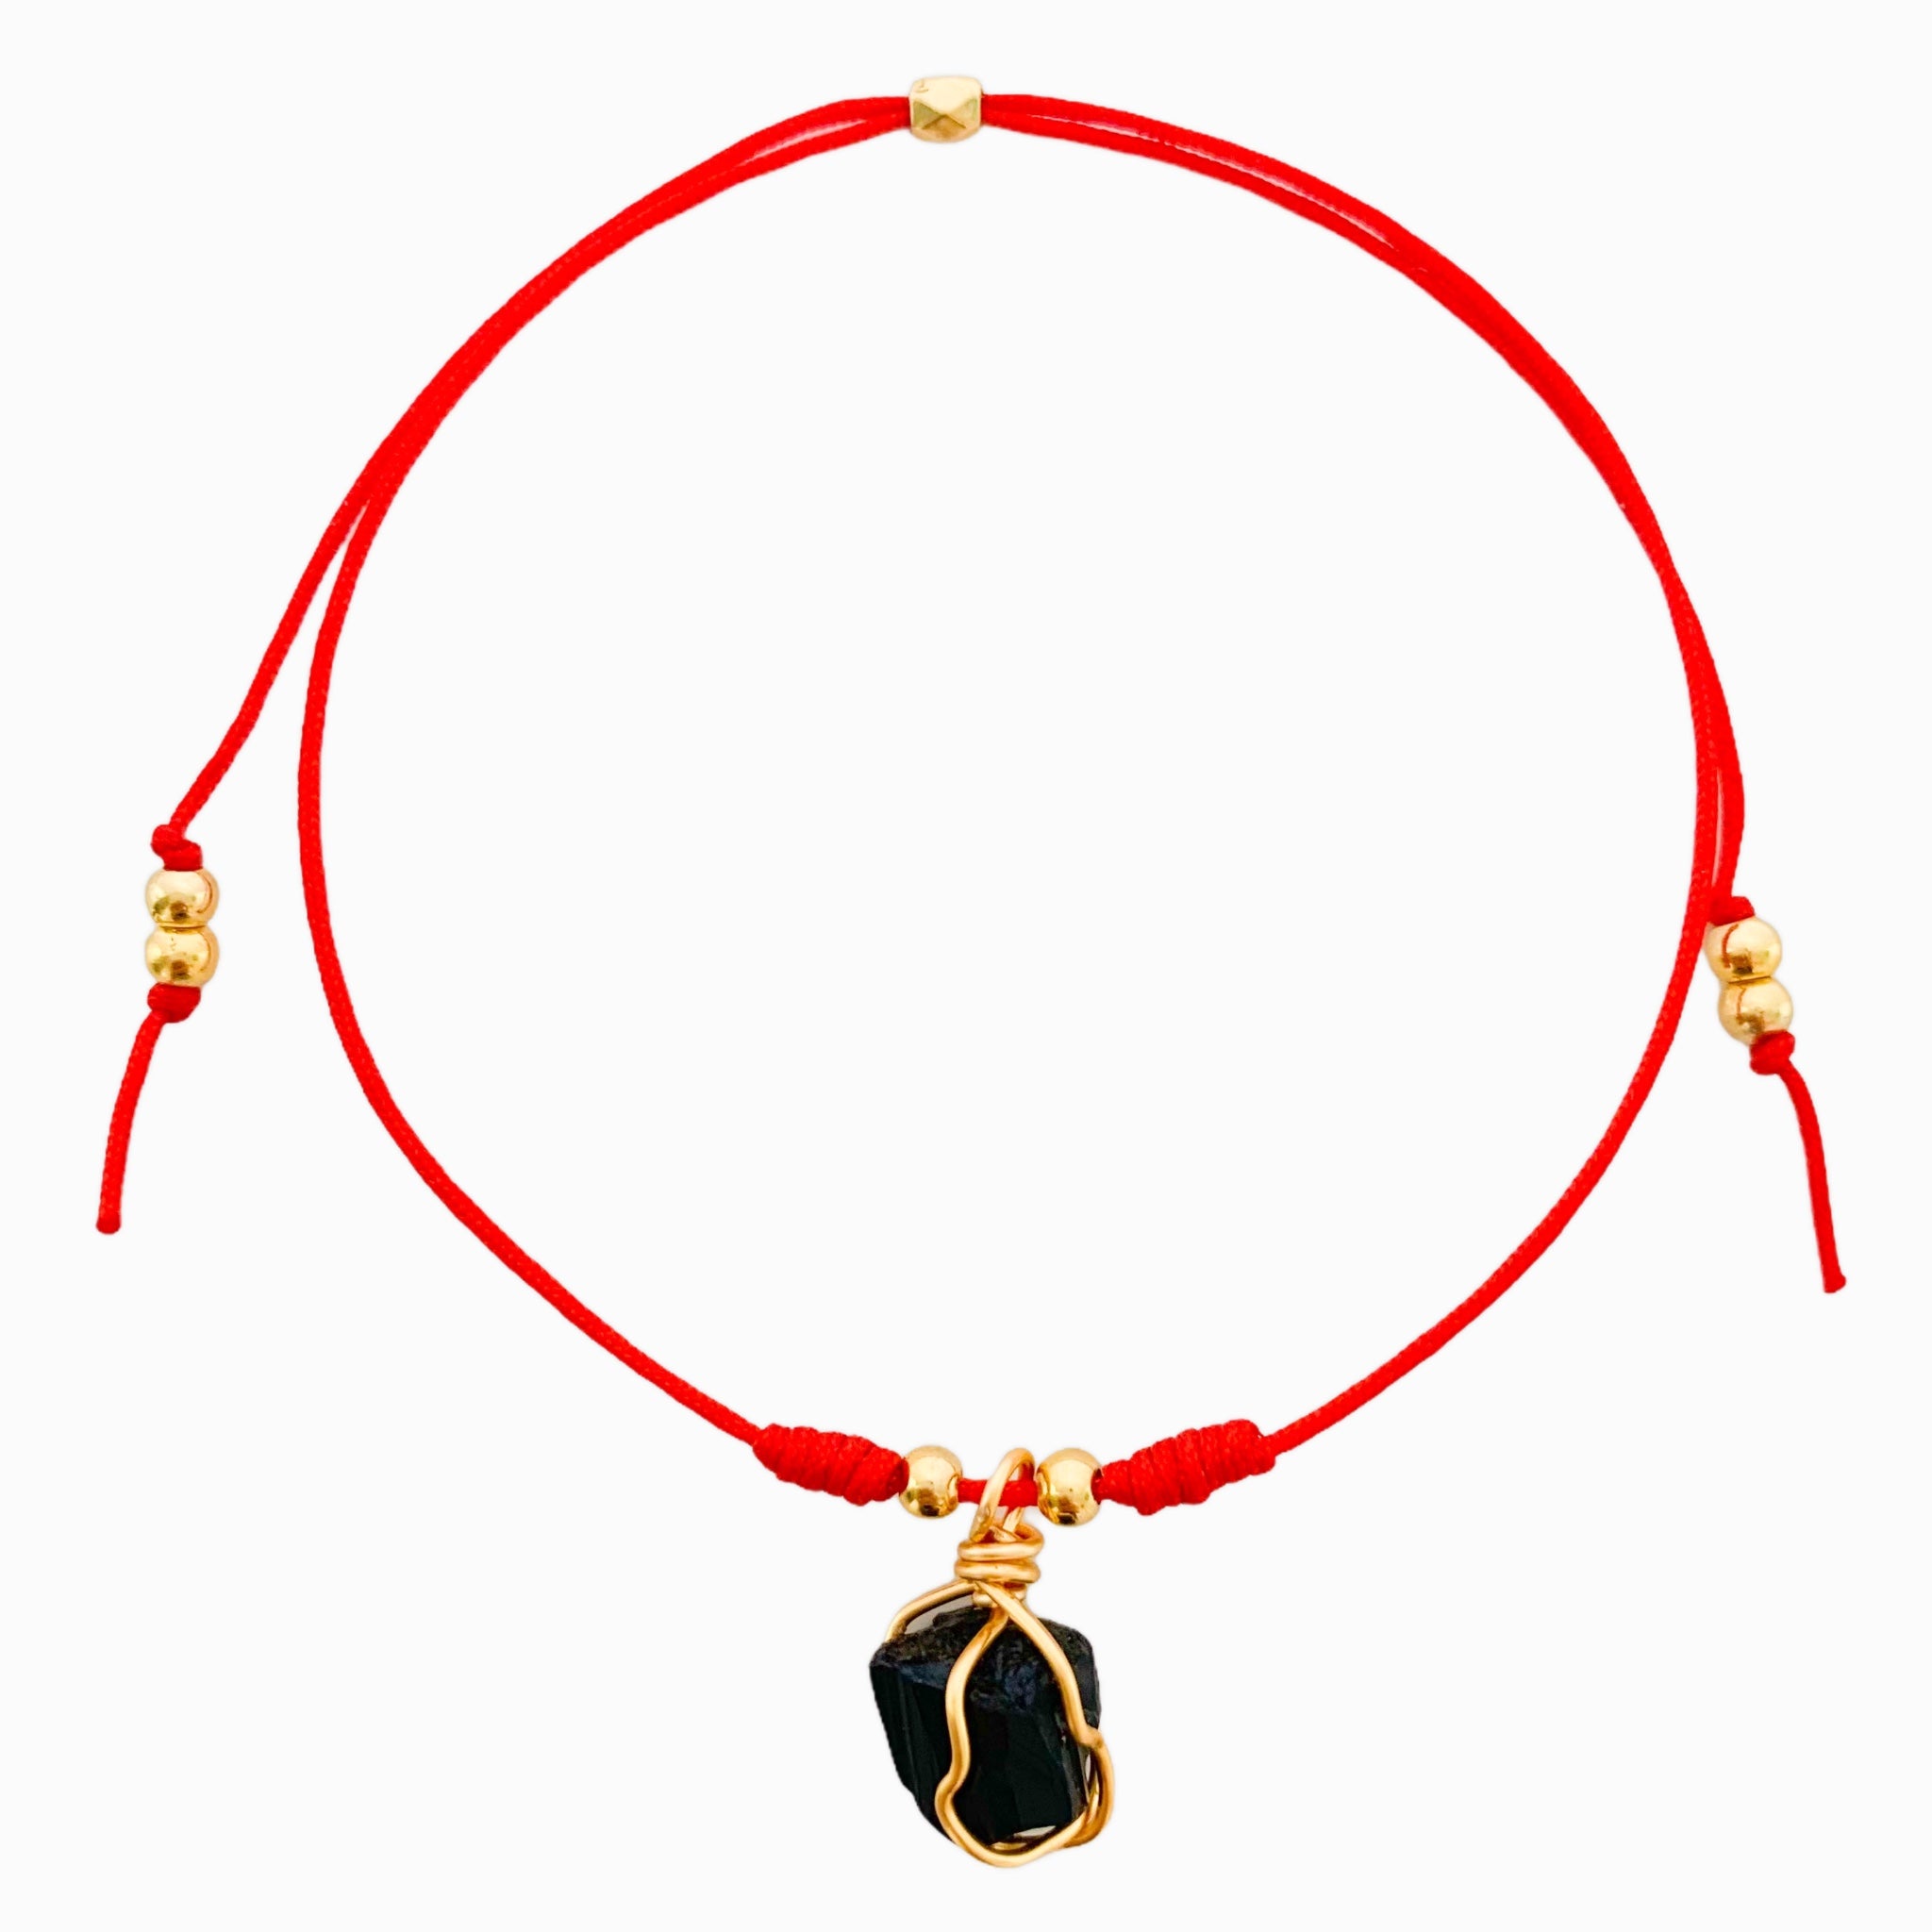 Black Tourmaline Bracelet with Red Yarn